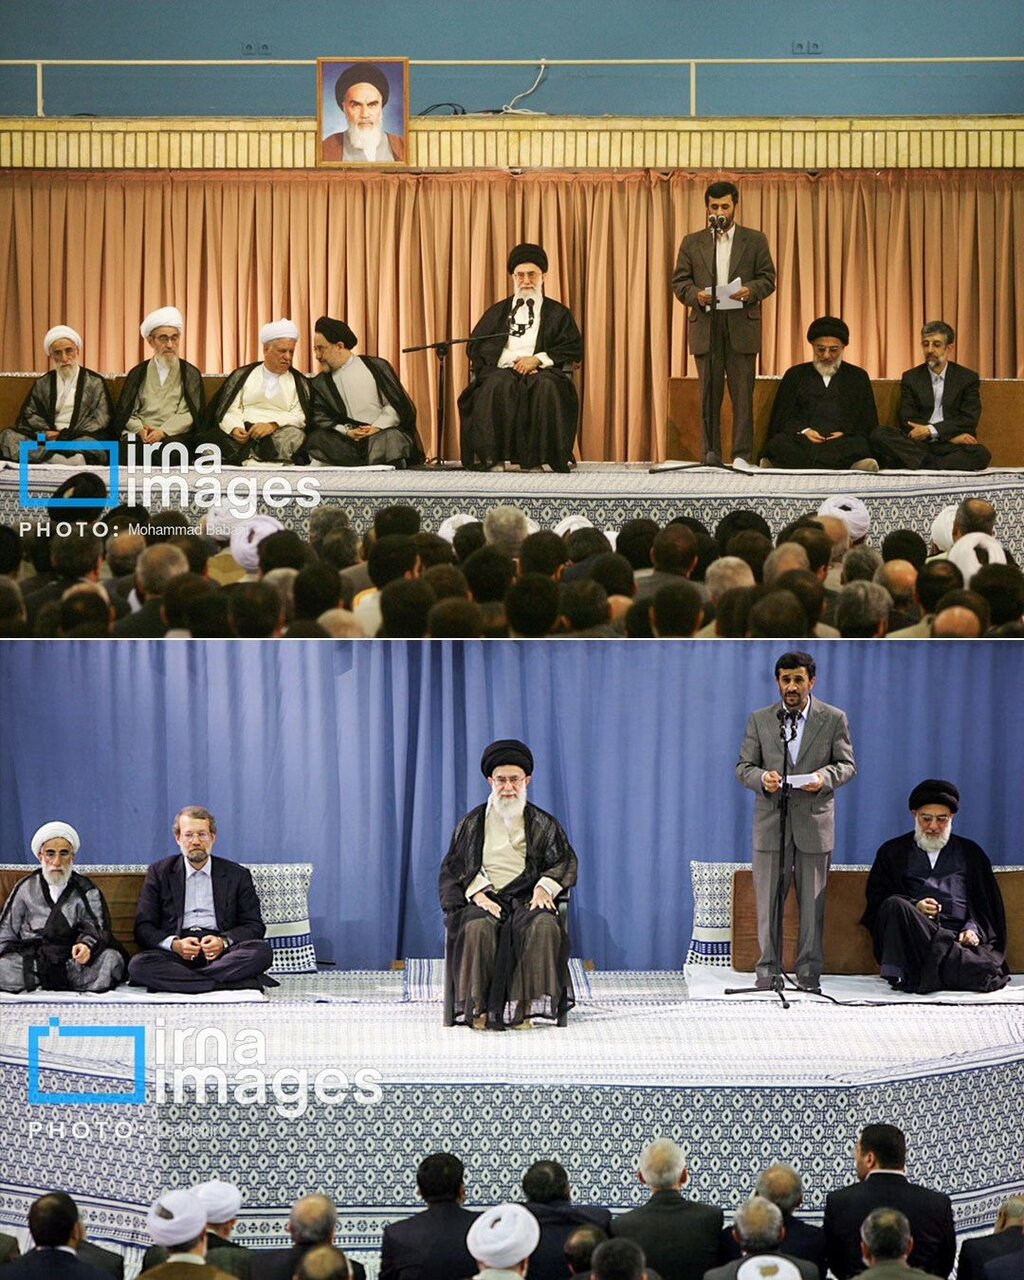 تصاویر خاص از روزگار جوانی رهبر انقلاب و آیت الله هاشمی /احمدی نژاد همه را دلخور کرد /ابراز ارادت روحانی